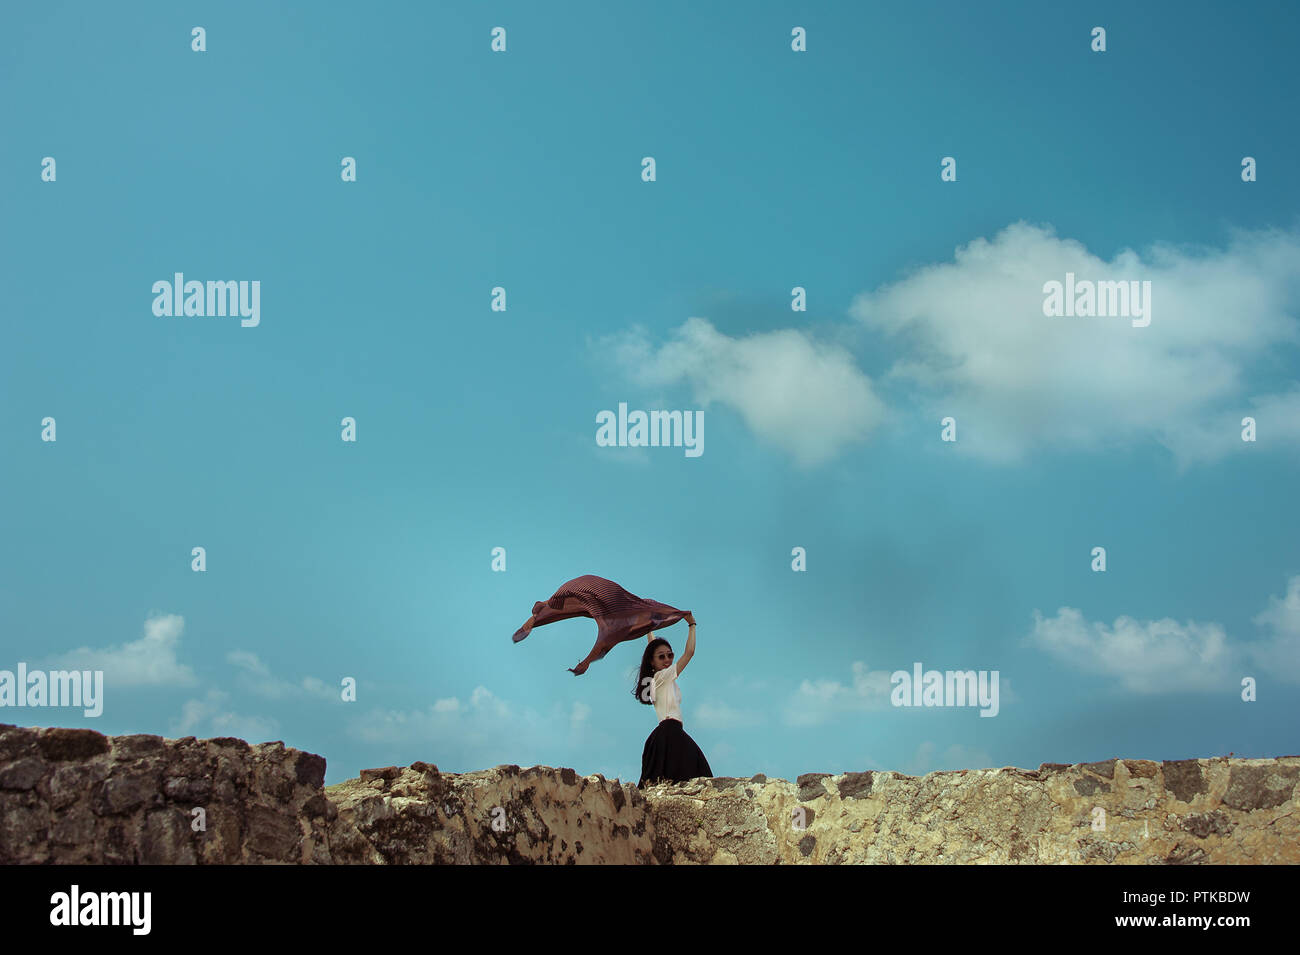 Mädchen mit Schal im Wind. Frau mit langen dunklen Haaren, Posen auf Wand gegen den blauen Himmel Hintergrund Stockfoto